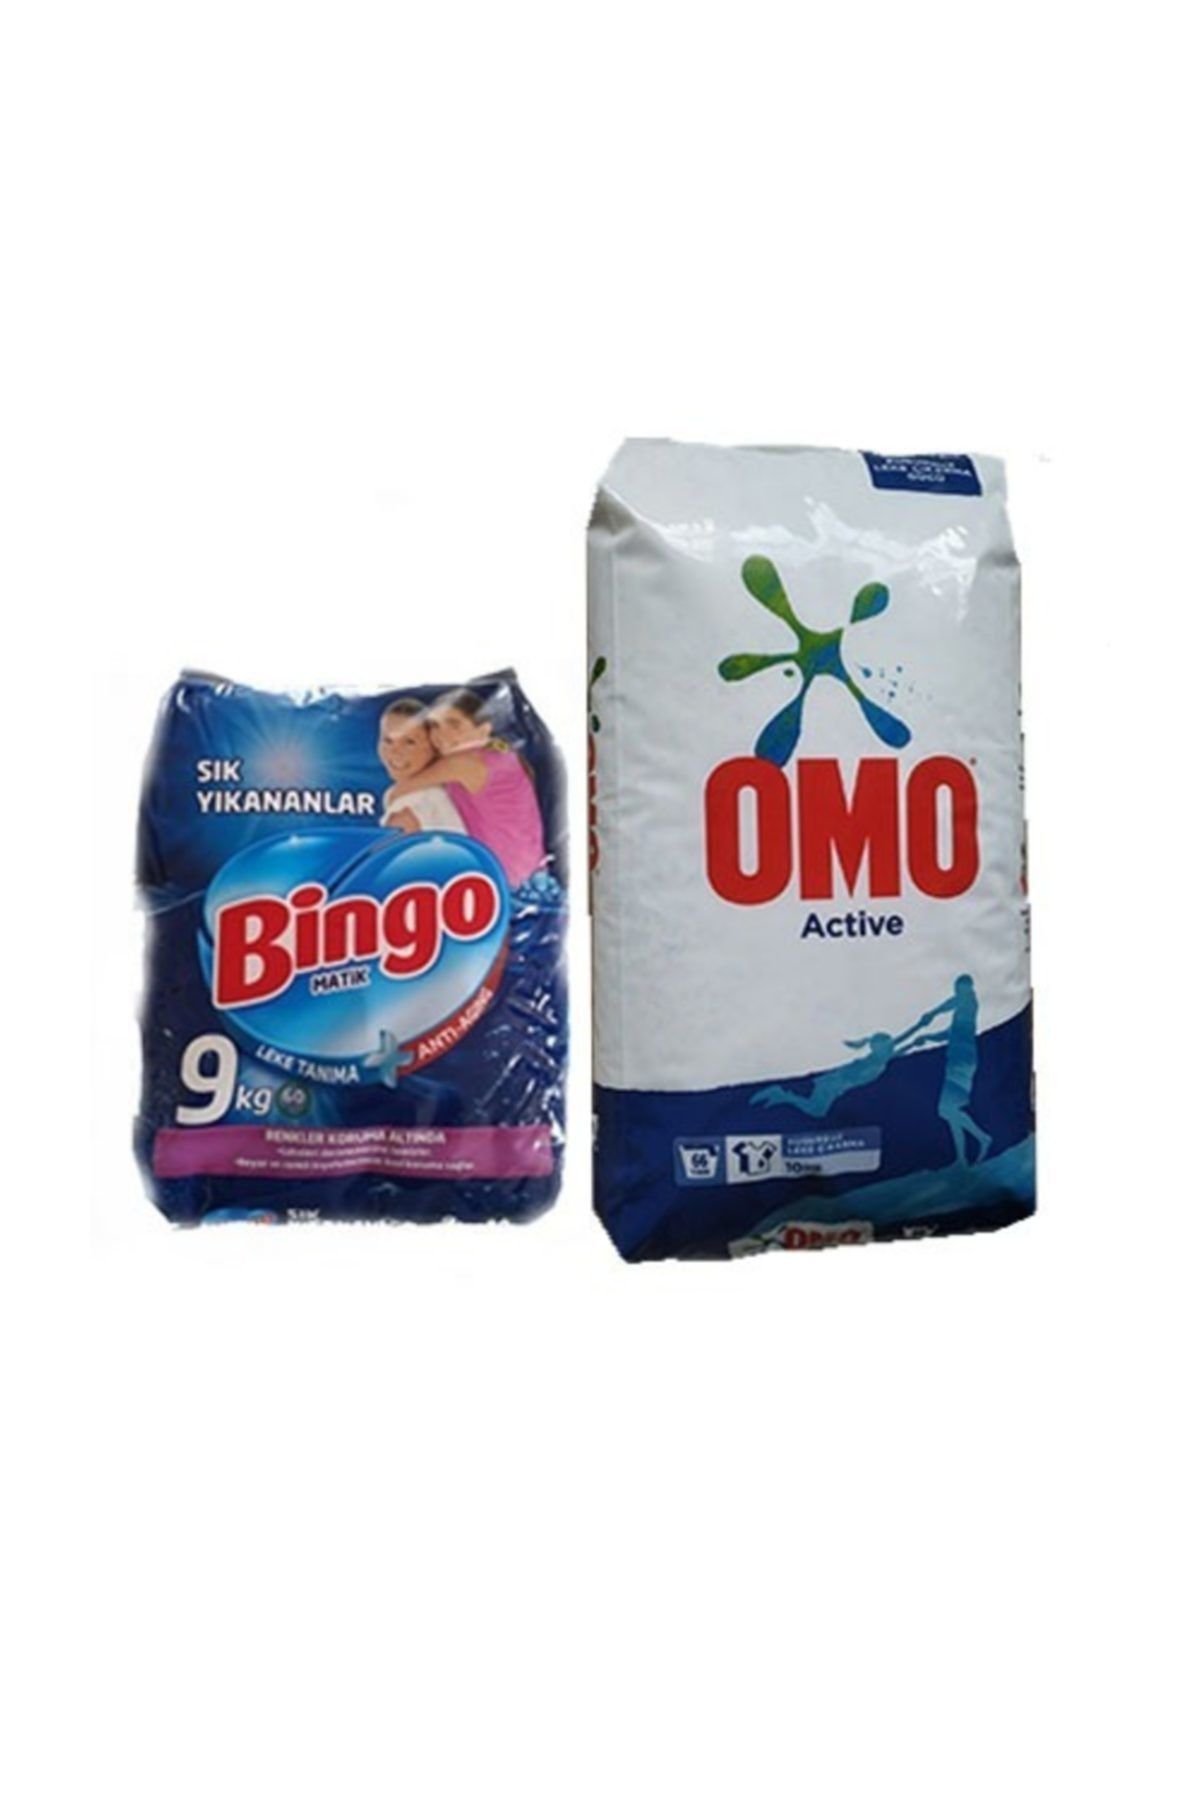 Bingo Matik Sık Yıkananlar 9kg + Omo Matik Active 10 Kg